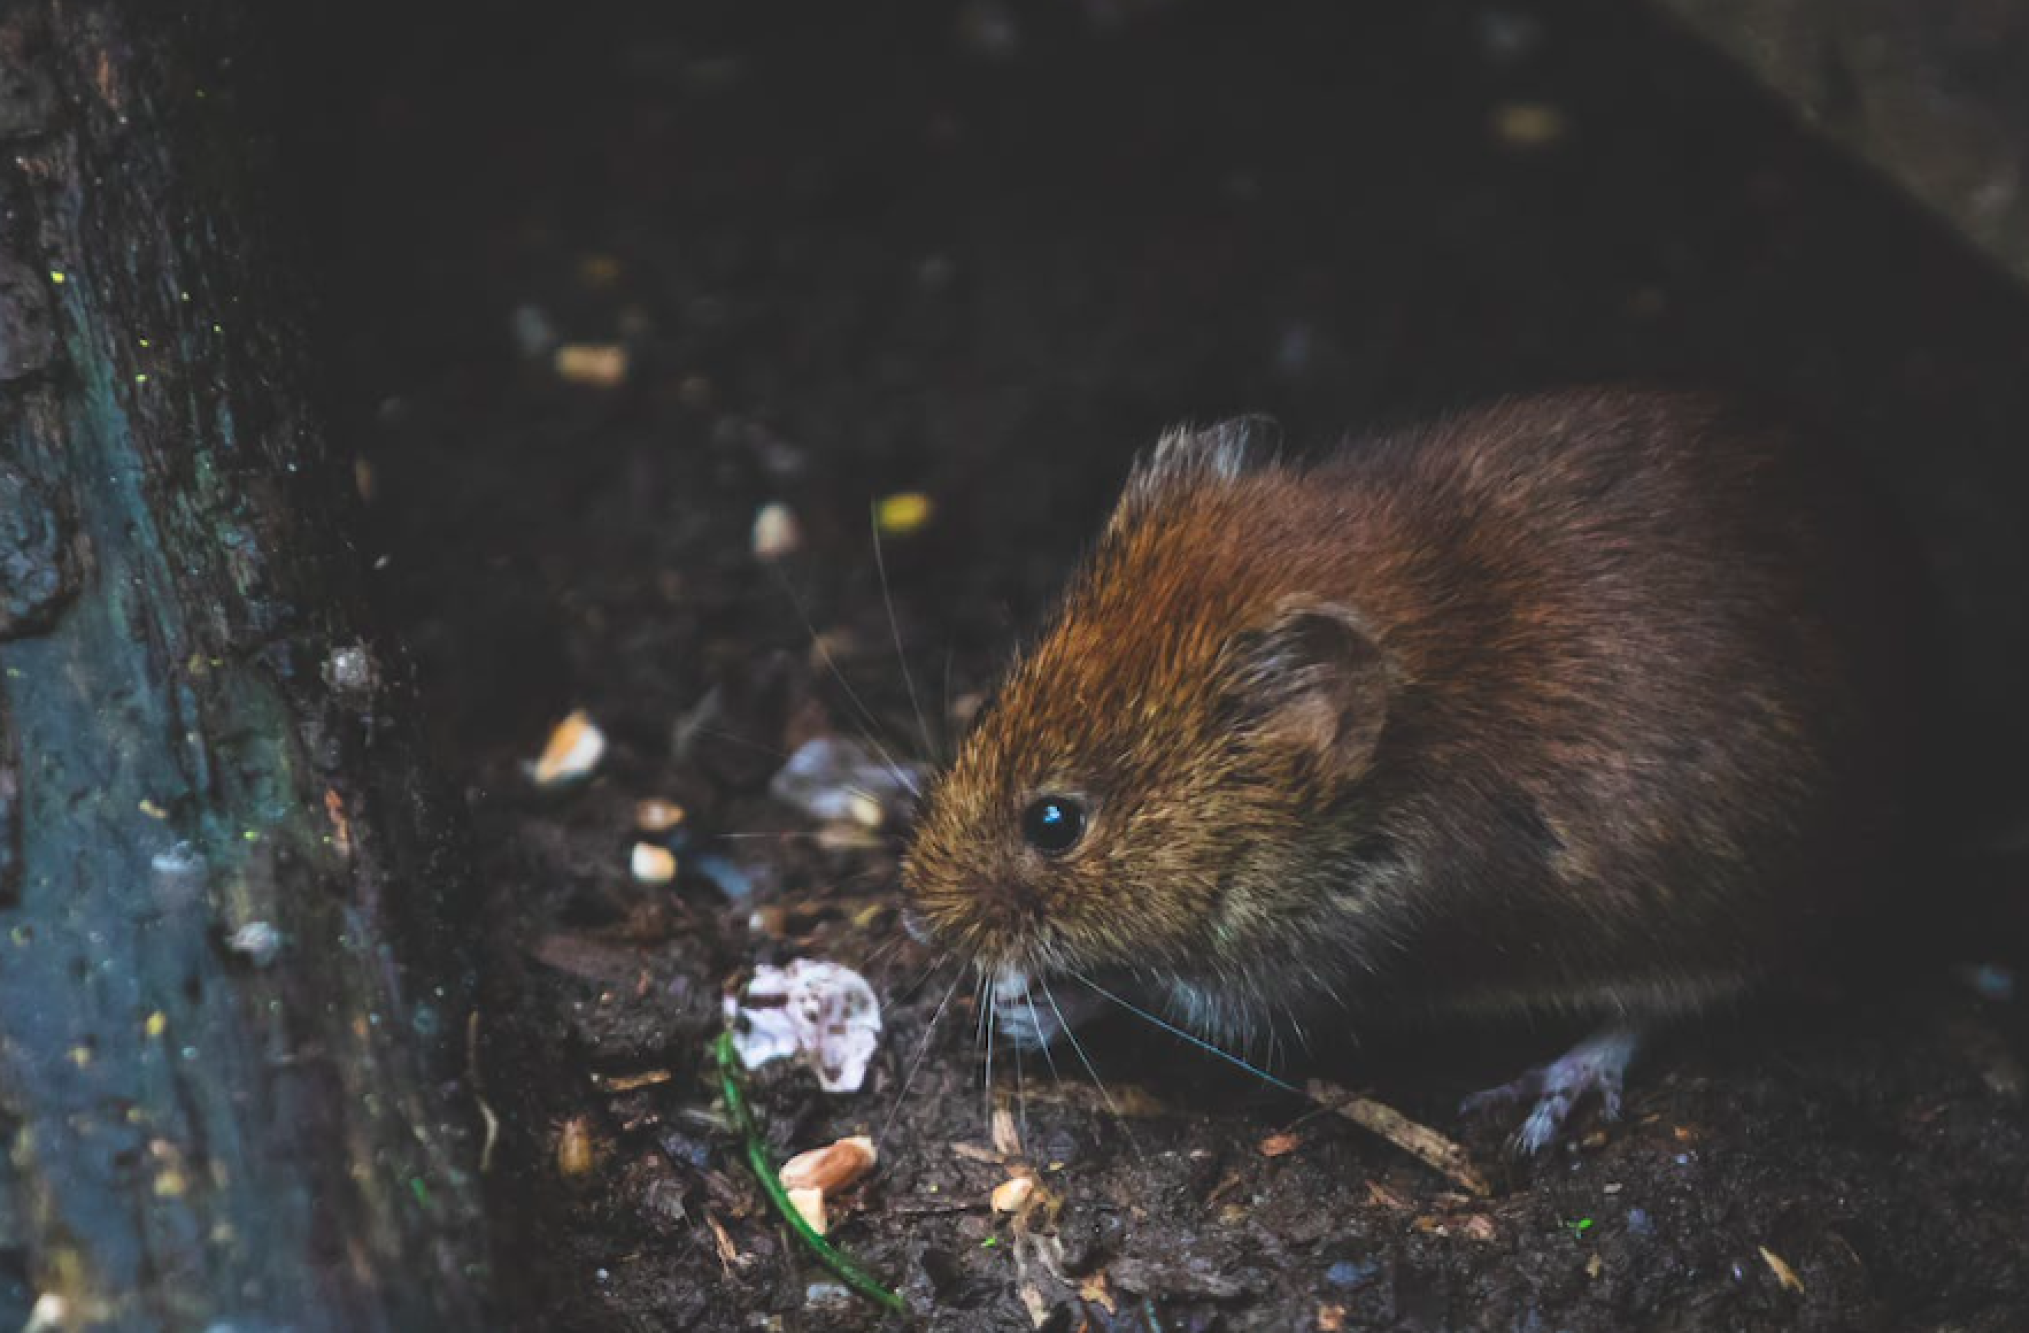  Topi e Ratti - Differenze tra le specie, situazioni di infestazione e metodi di prevenzione e disinfestazione